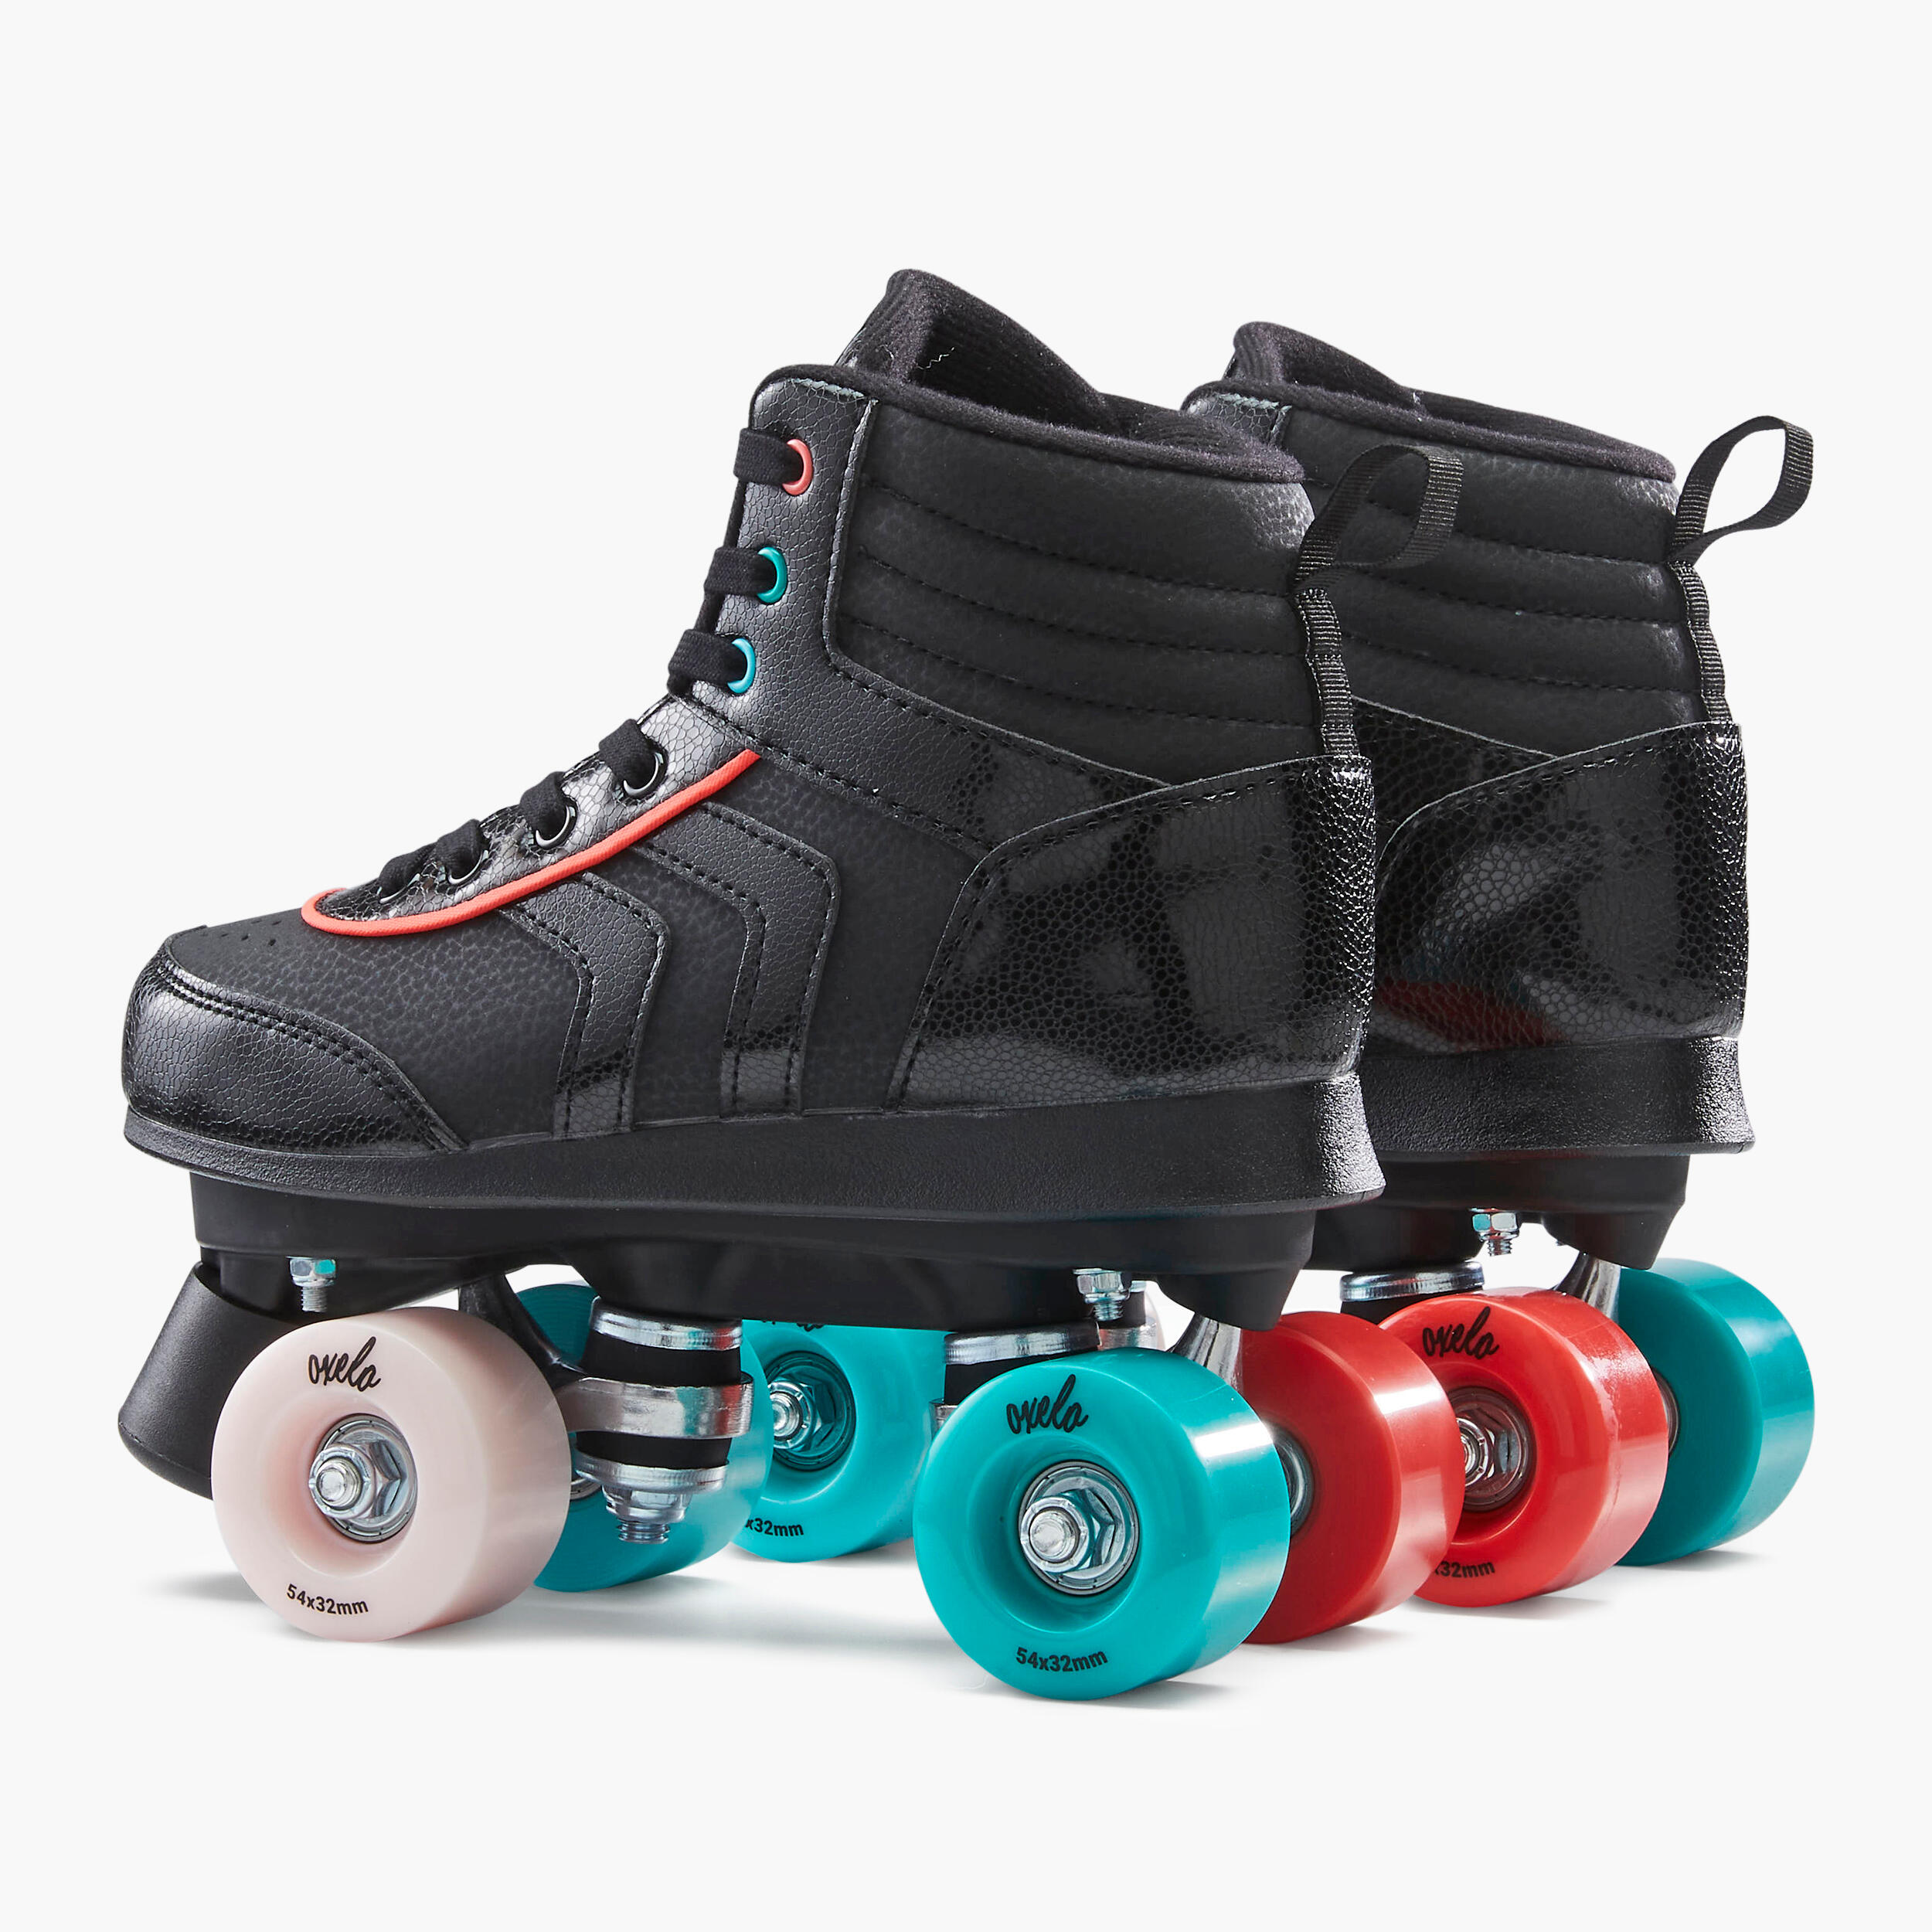 Kids' Roller Skates Quad 100 - Black 5/11